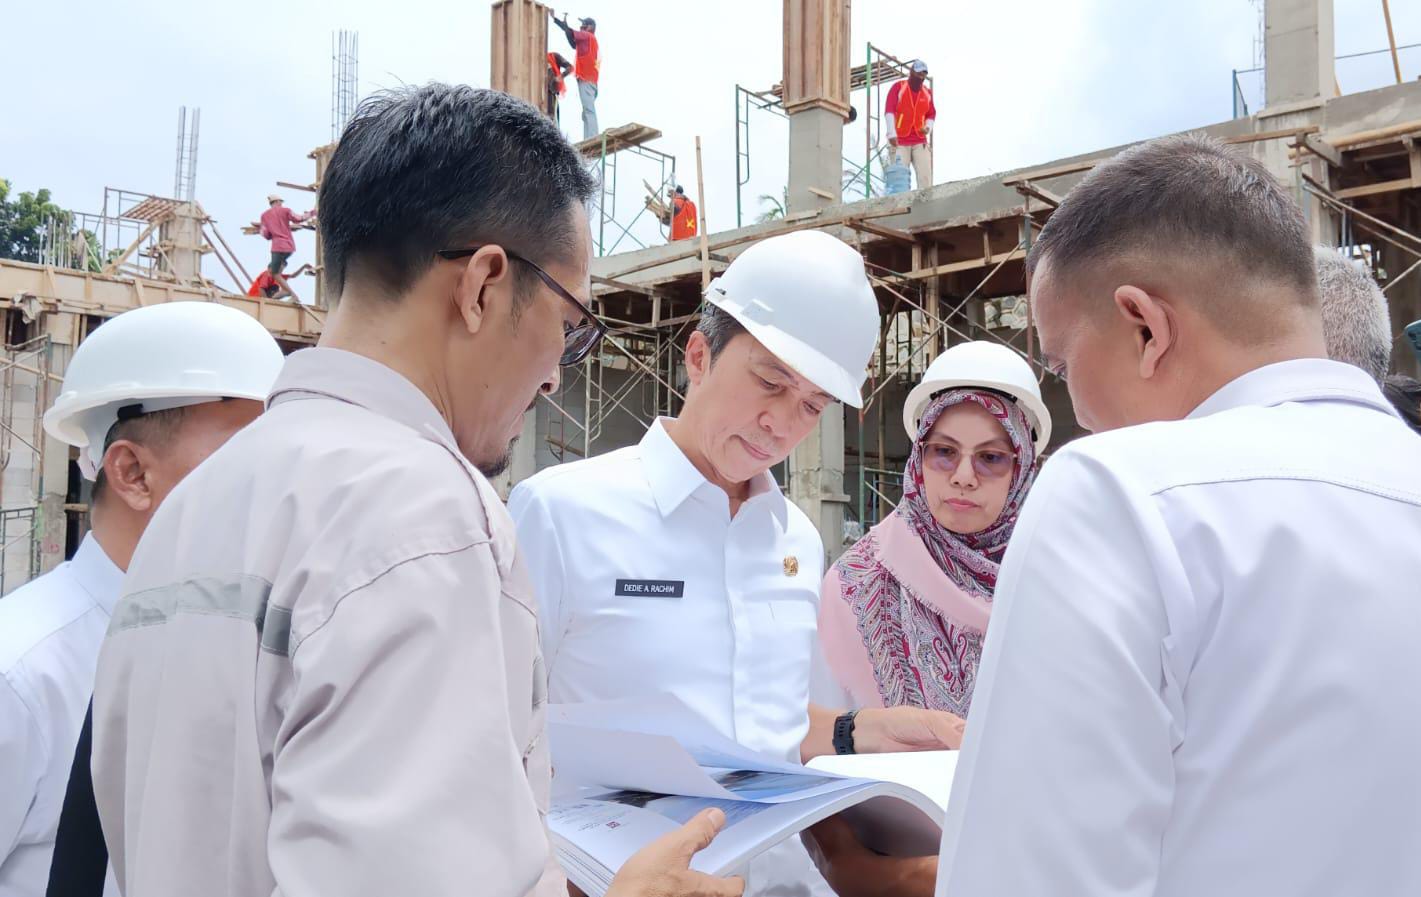 Wakil Wali Kota Bogor, Dedie A. Rachim beserta jajaran saat meninjau lokasi proyek pembangunan lanjutan GOR Bogor Selatan.